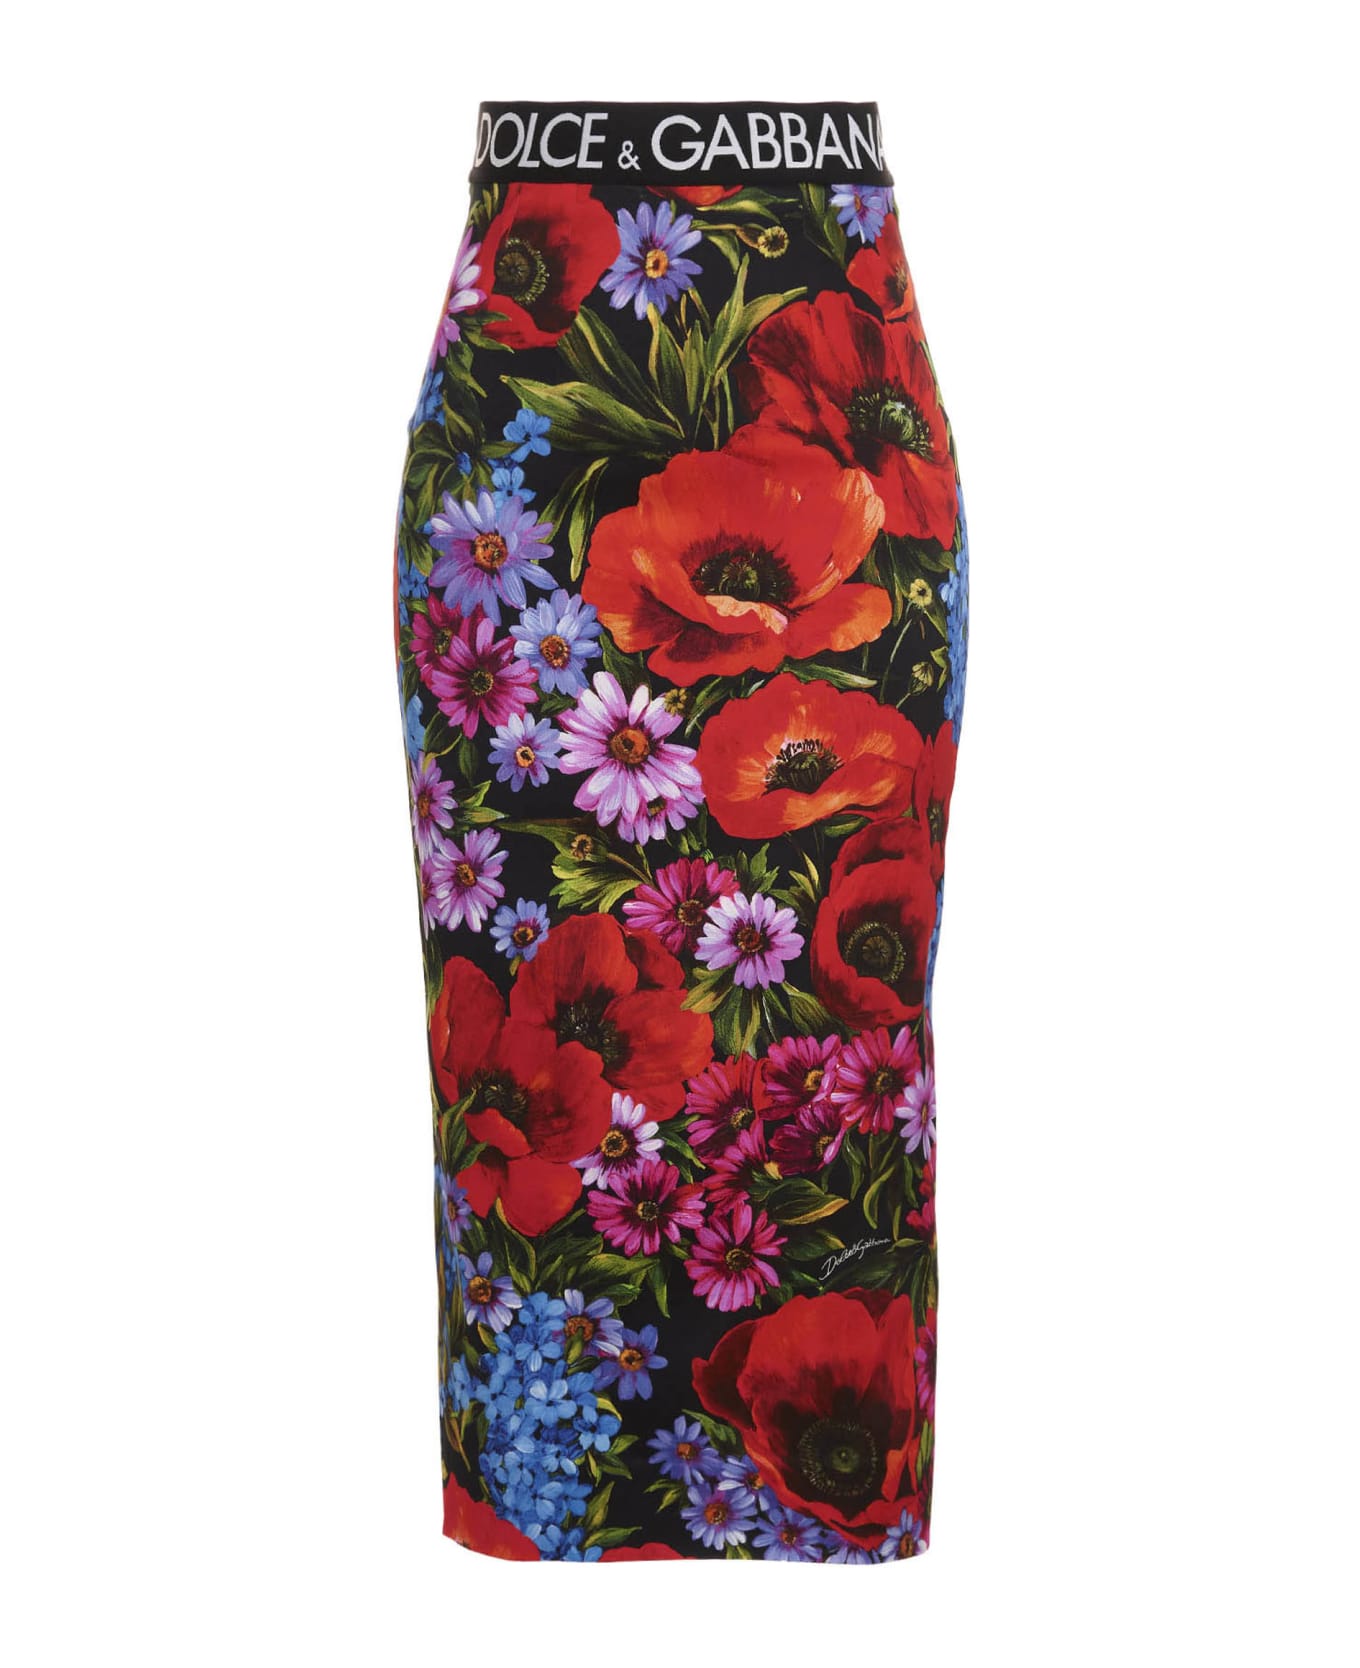 Dolce & Gabbana 'prato Fiorito' Maxi Skirt - Multicolor